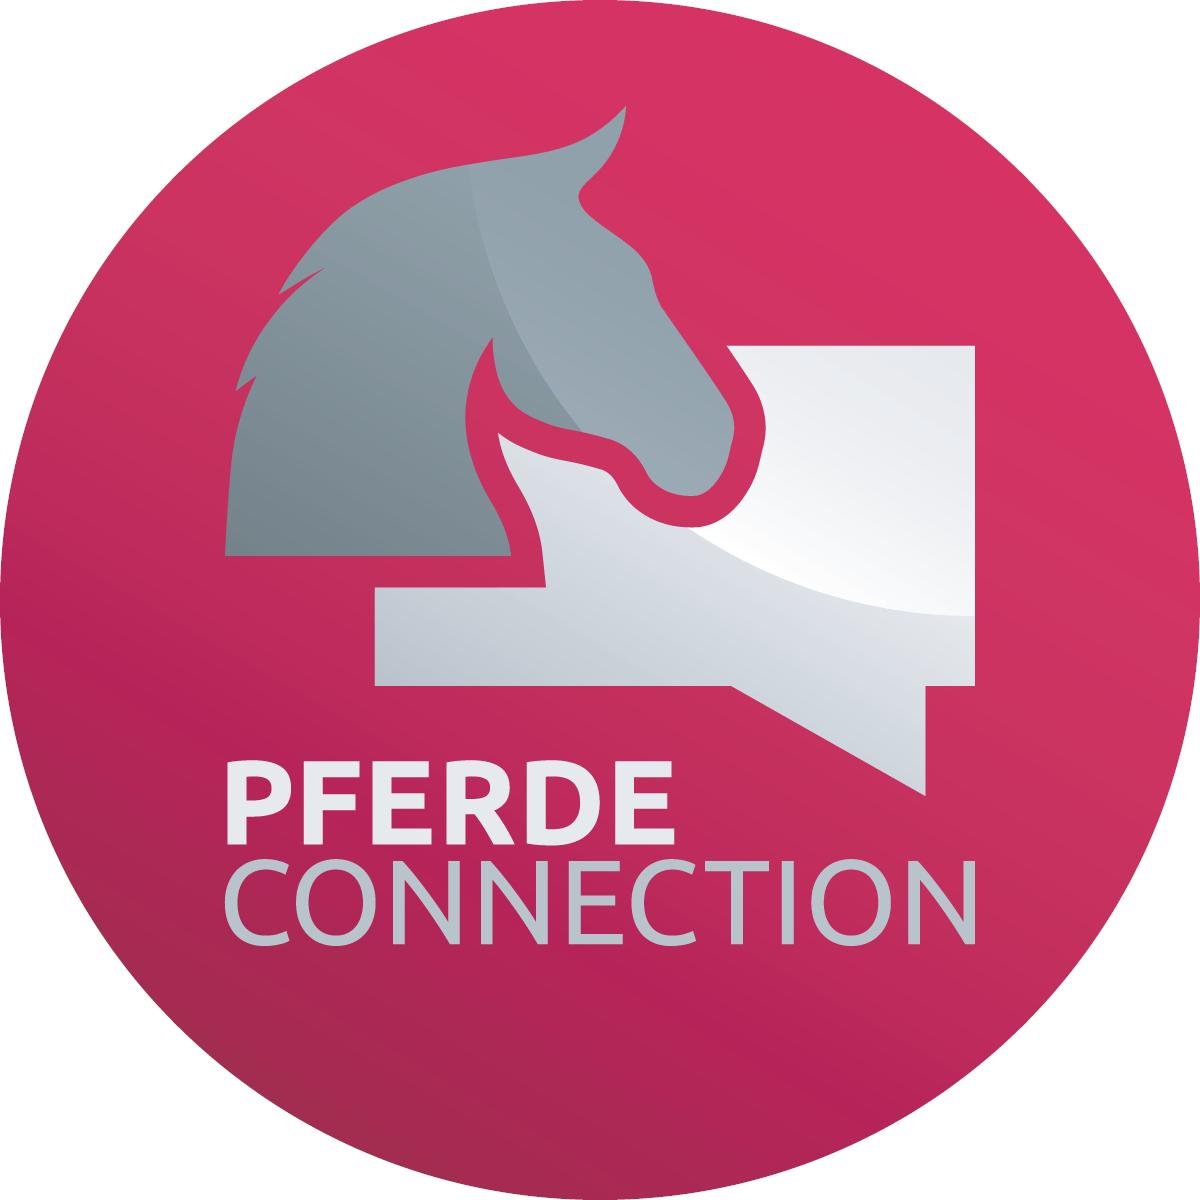 Pferde Connection ist das Social Network für Pferdefreunde. Impressum https://t.co/WXzGhcMhYH powered by @WassenhovenUG #Pferd #PferdeLiebe #HorseLove